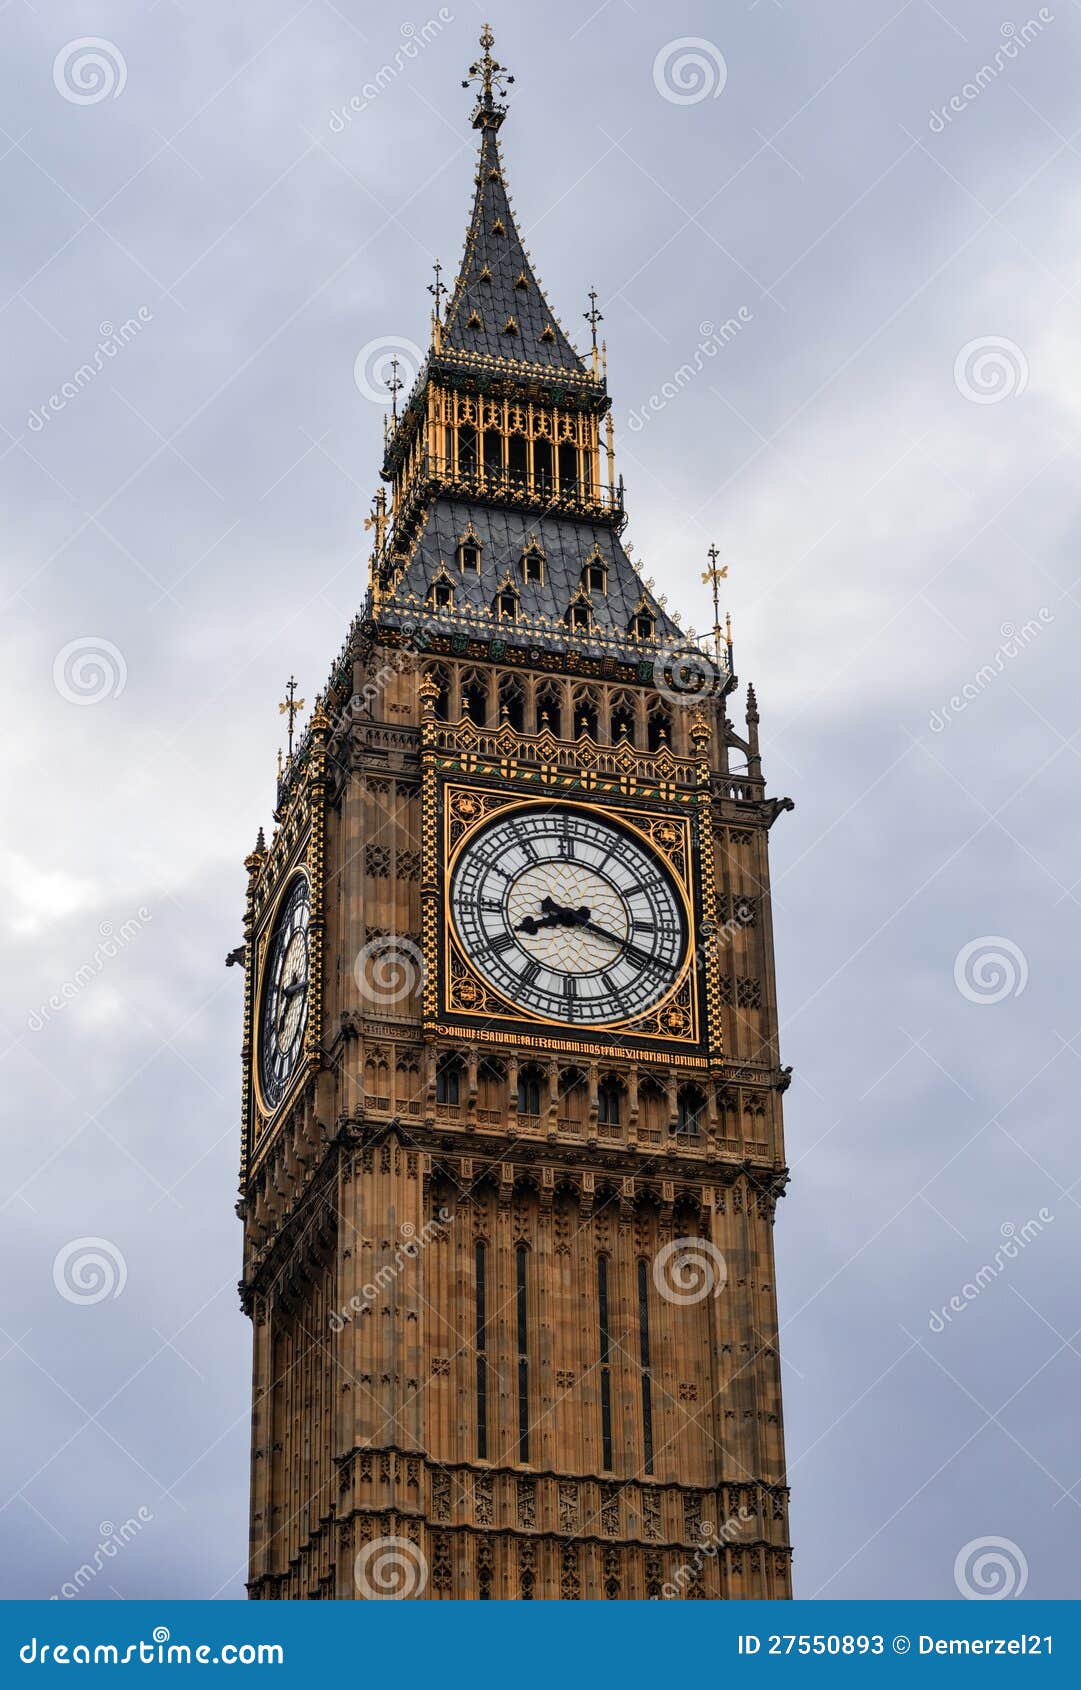 Το παγκοσμίως διάσημο Big Ben στο Λονδίνο, UK.